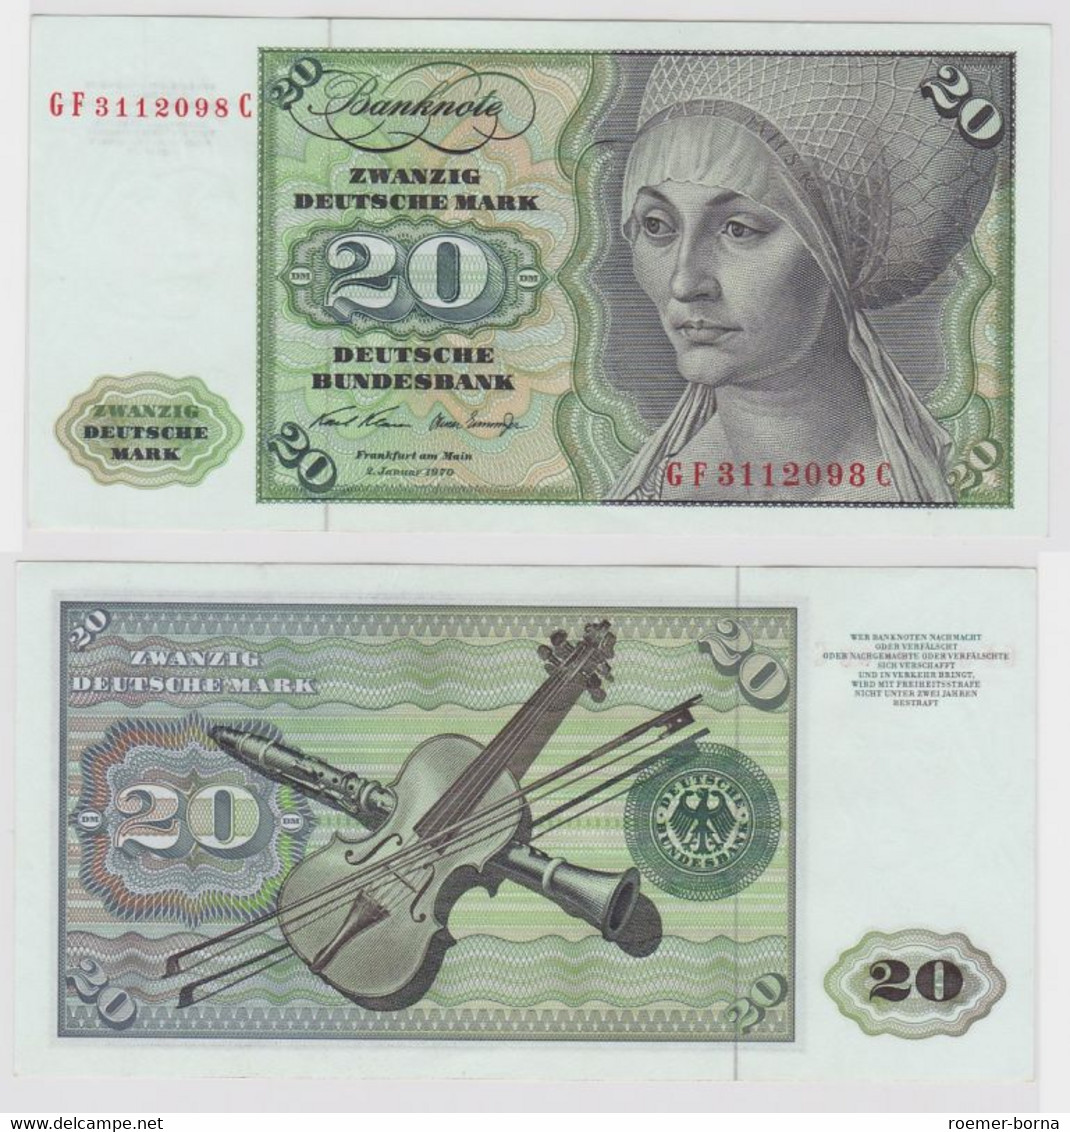 T136737 Banknote 20 DM Deutsche Mark Ro. 271b Schein 2.Jan. 1970 KN GF 3112098 C - 20 DM